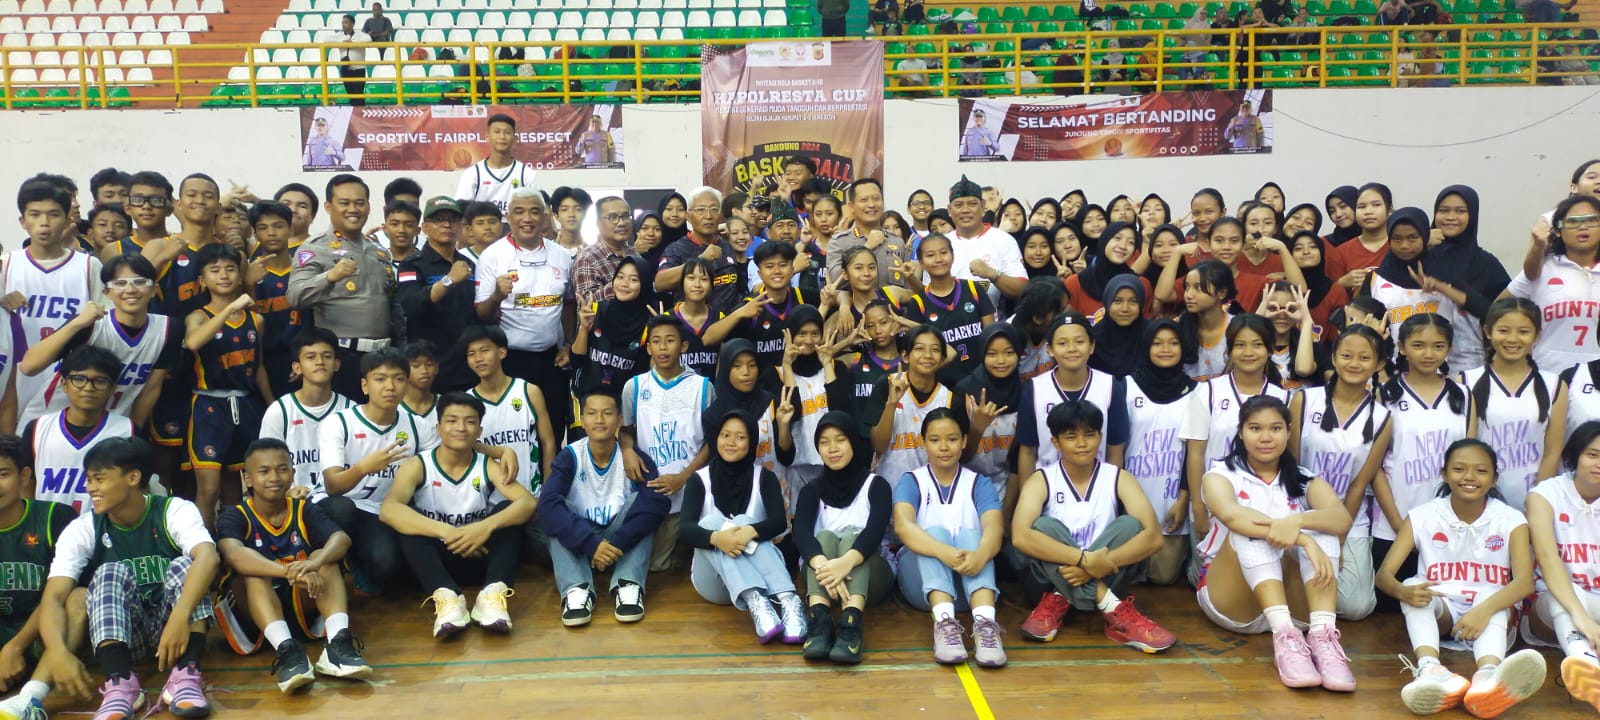 Jaring Bibit Atlet Berbakat, Polresta Bandung Gelar Turnamen Bola Basket Tingkat Nasional